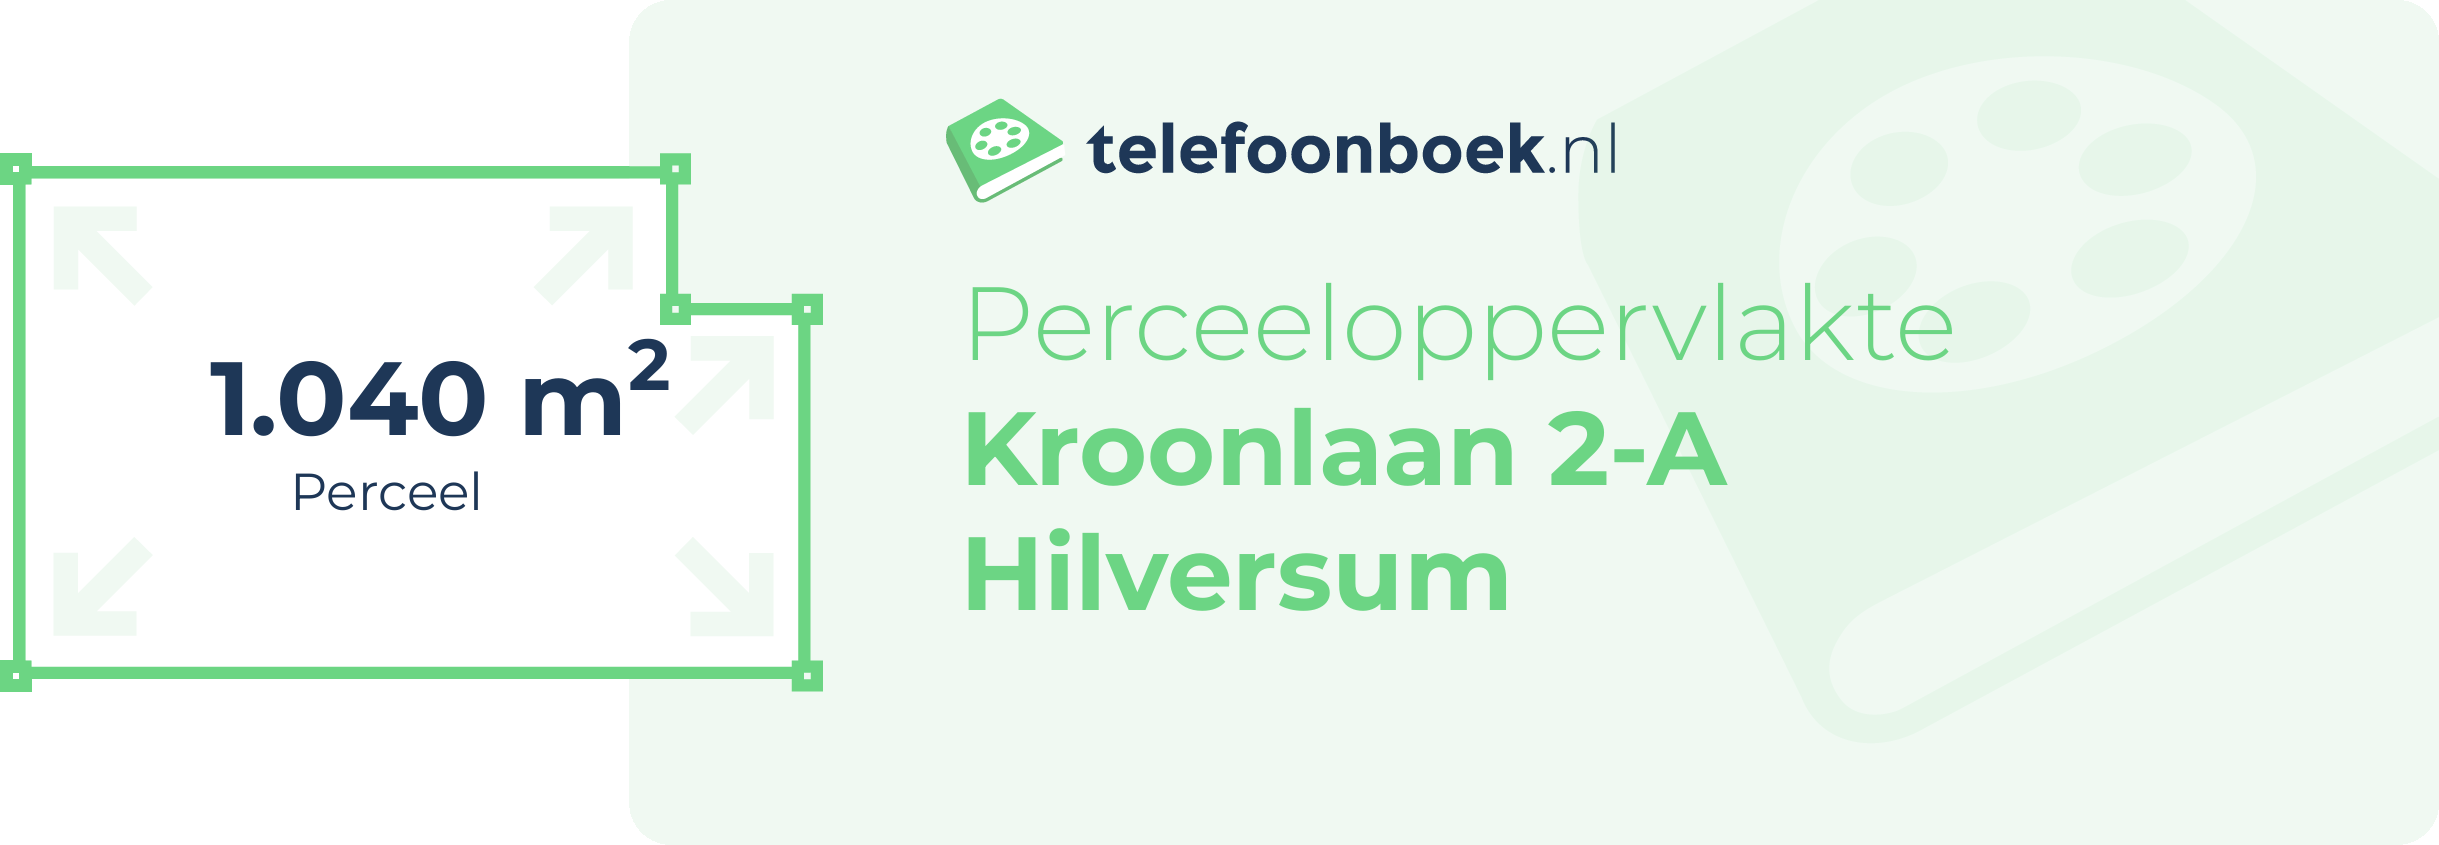 Perceeloppervlakte Kroonlaan 2-A Hilversum